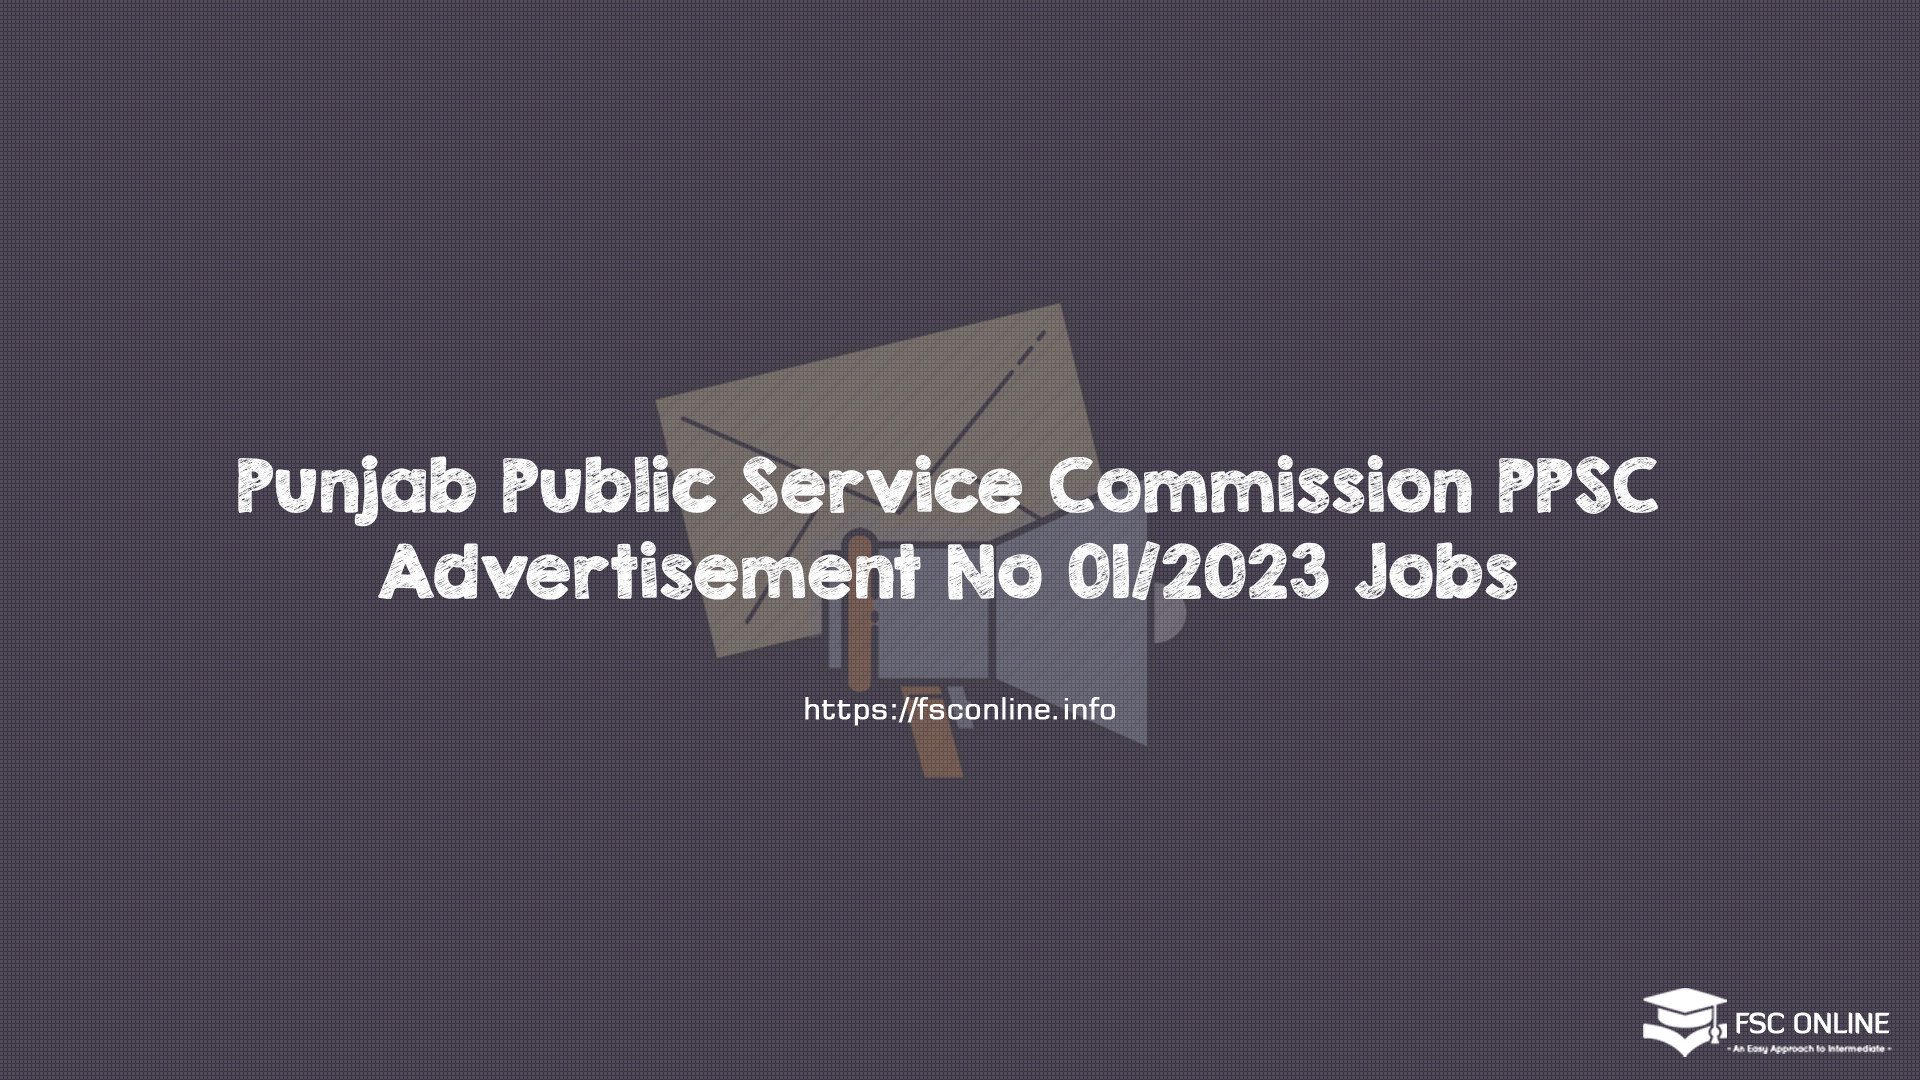 Punjab Public Service Commission PPSC Advertisement No 01/2023 Jobs